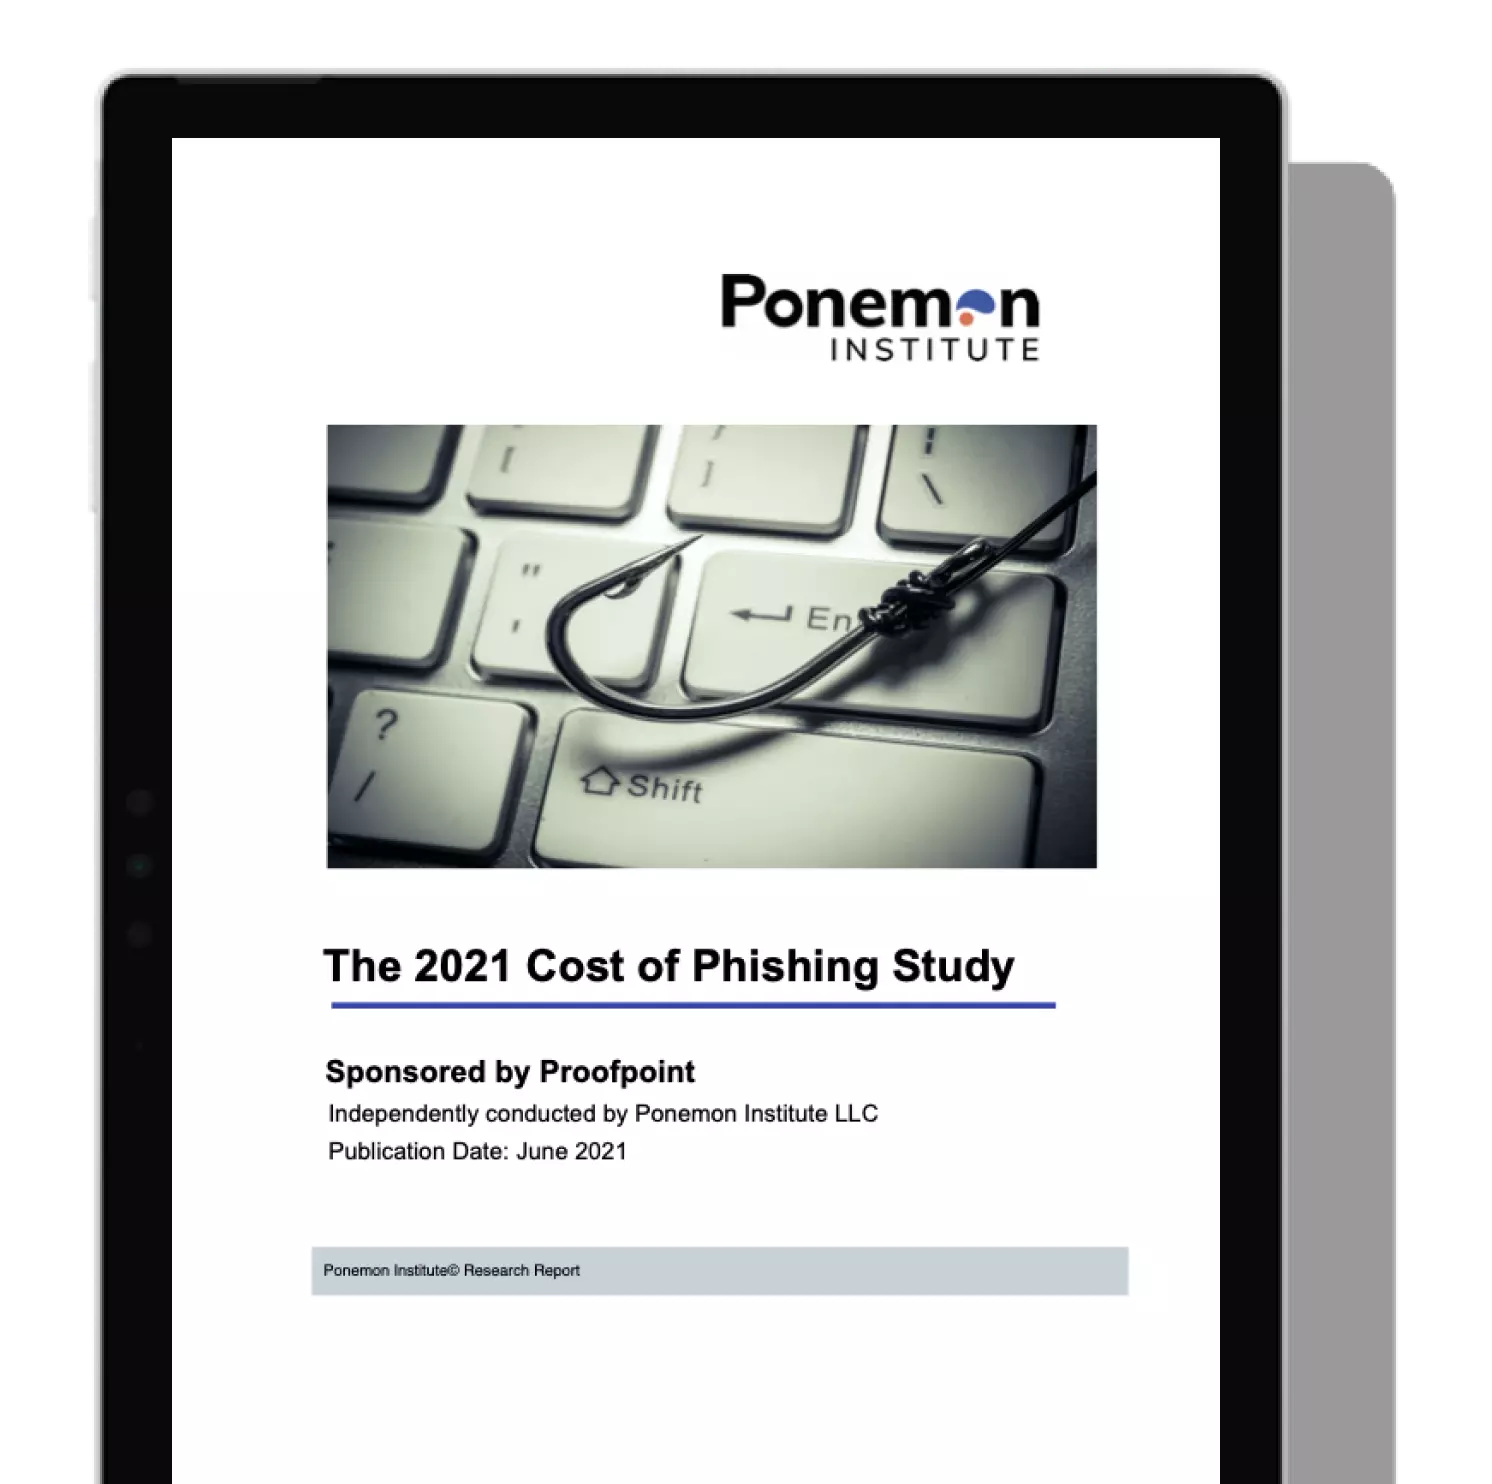 Deckblatt der Ponemon-Studie zu den Kosten verursacht durch Phishing